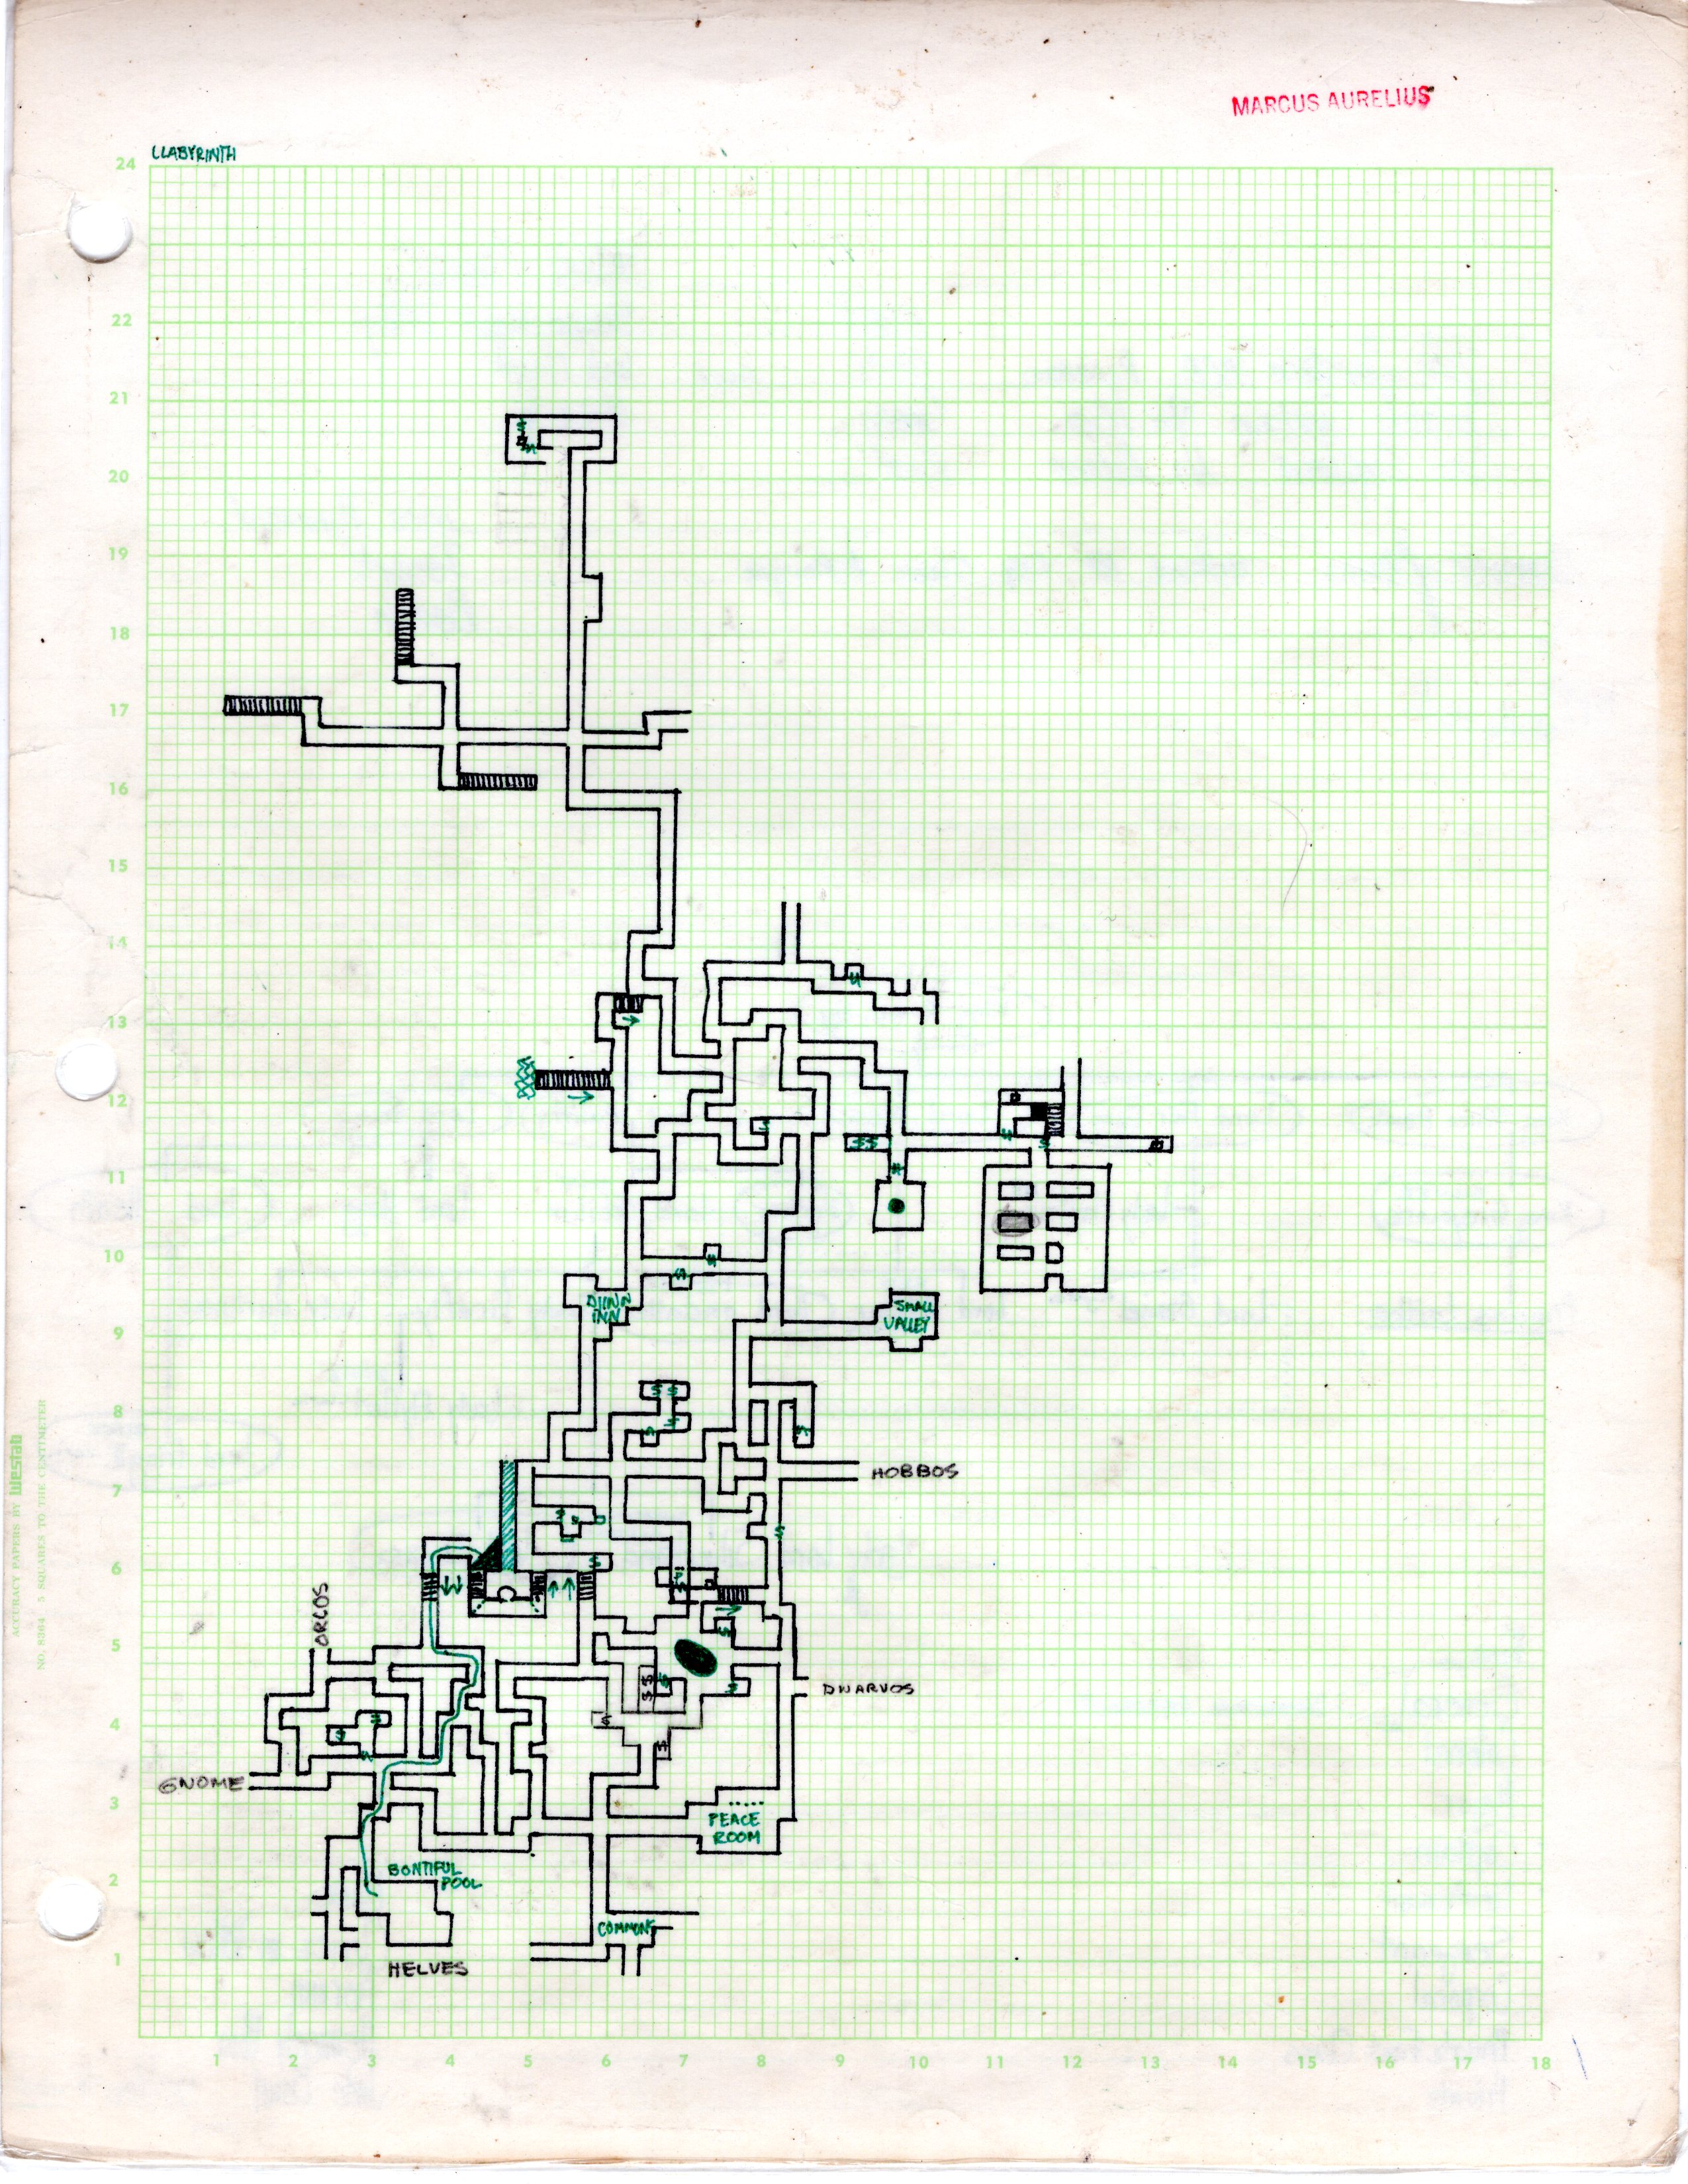 troad dungeon maps llabyrinth original.jpg